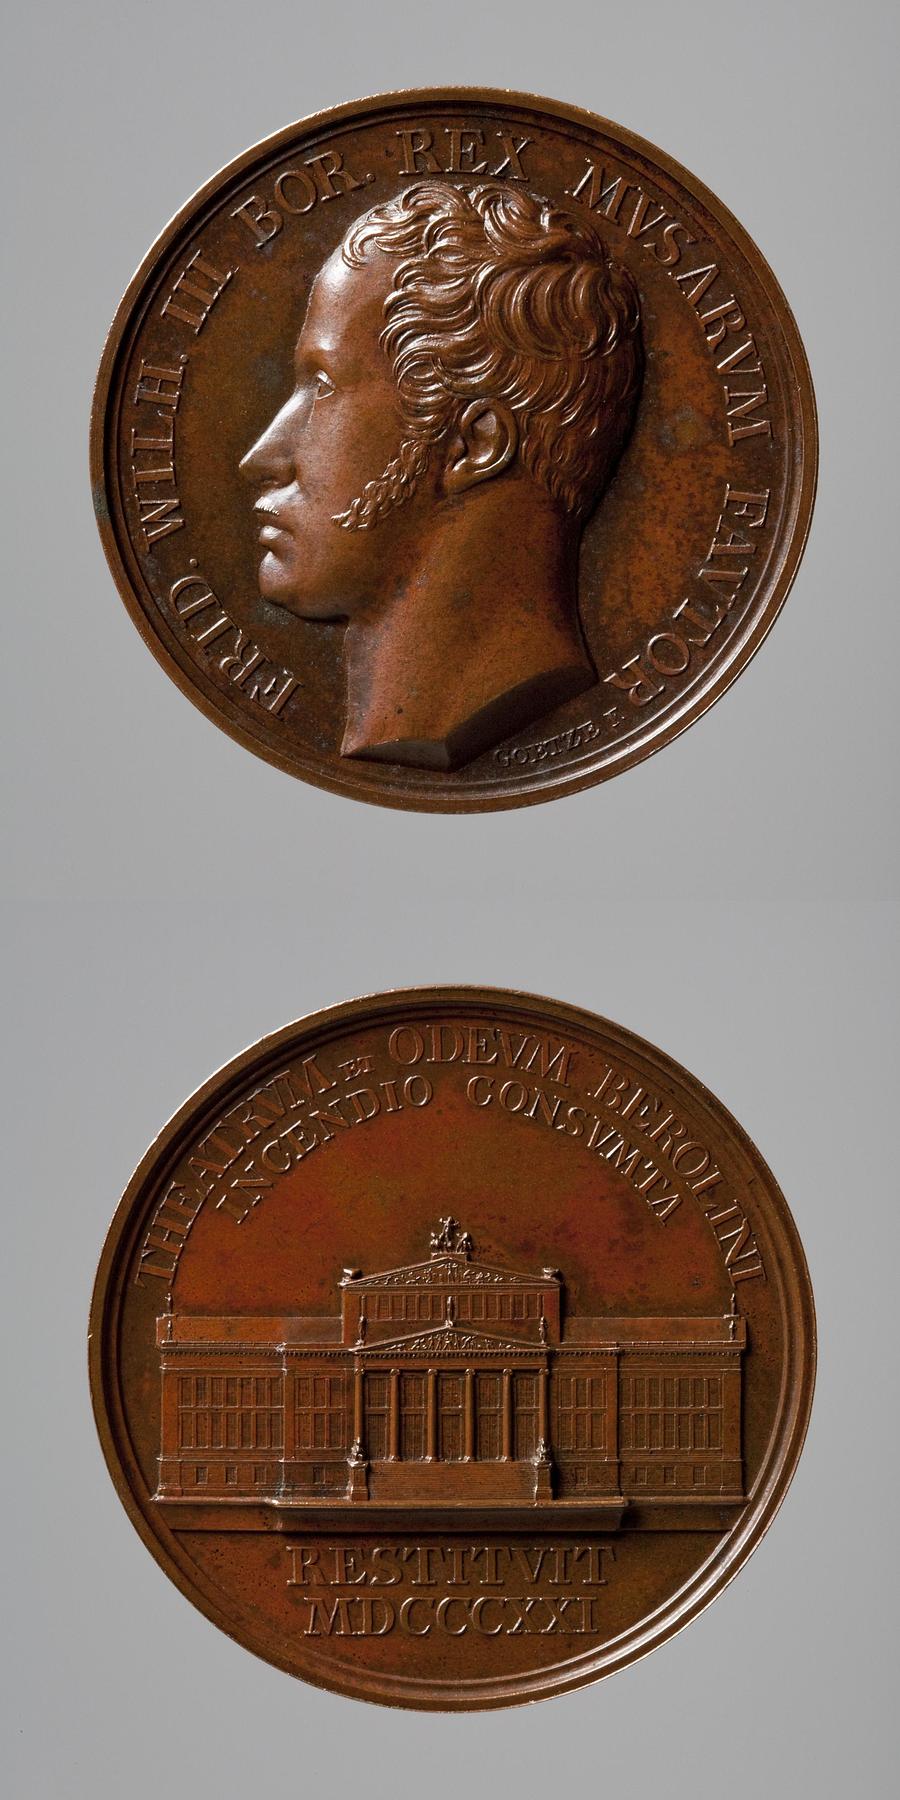 Medaljens forside: Friedrich Wilhelm 3. af Preussen. Medaljens bagside: Det Kongelige Skuespilhus i Berlin, F89